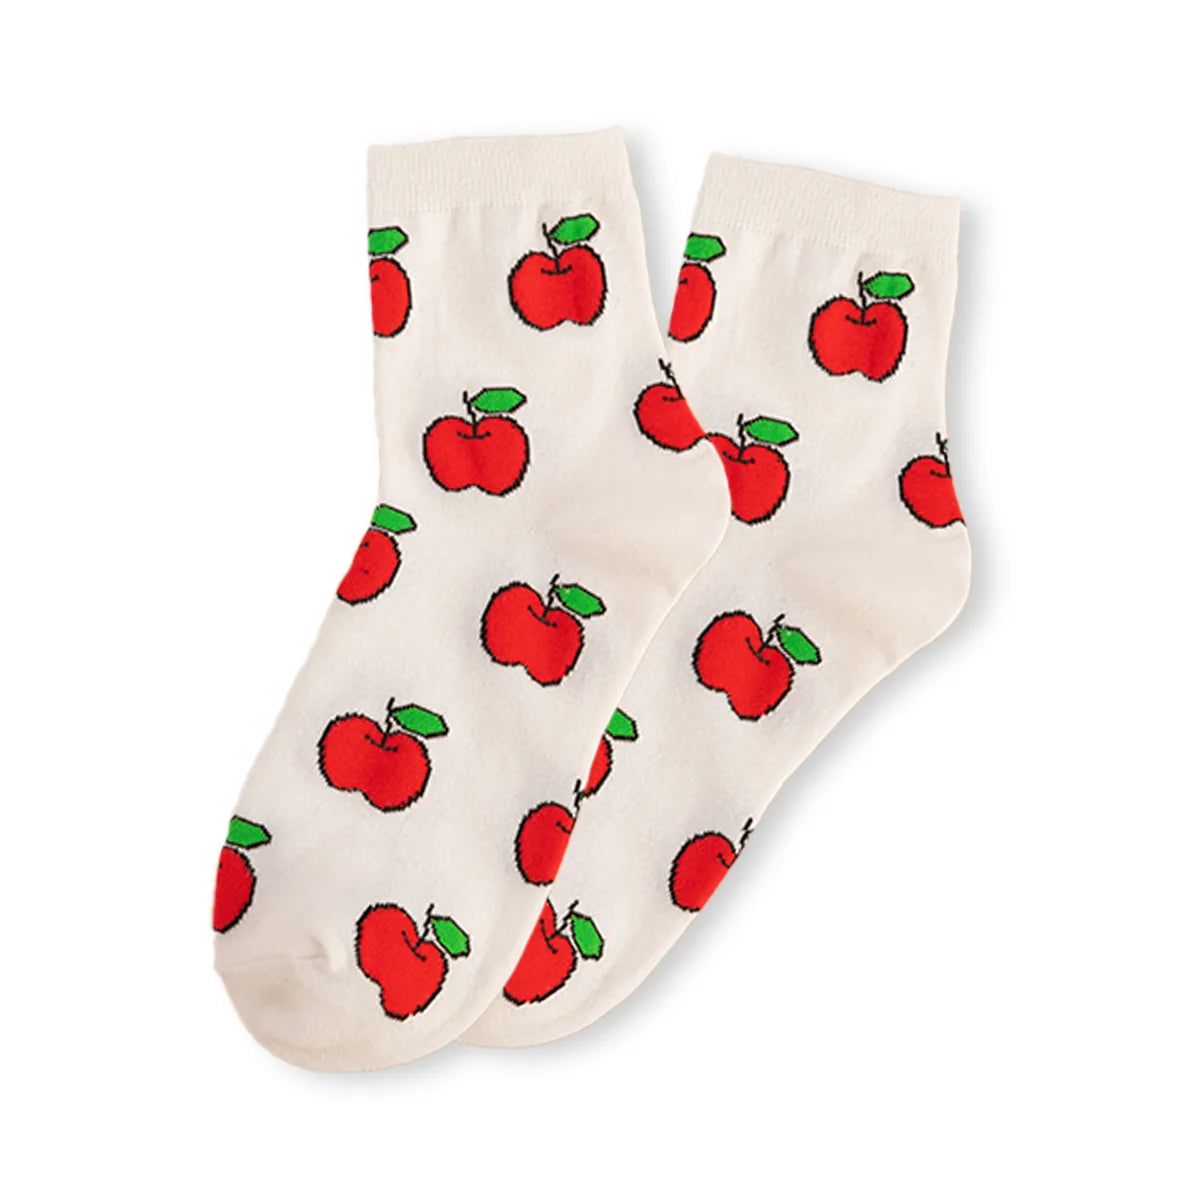 Chaussettes pommes longues en coton à motif fruit pour adultes | Chaussettes douces et confortables | Fabriquées à partir de matériaux de haute qualité | Un cadeau parfait pour les hommes et les femmes de tous âges